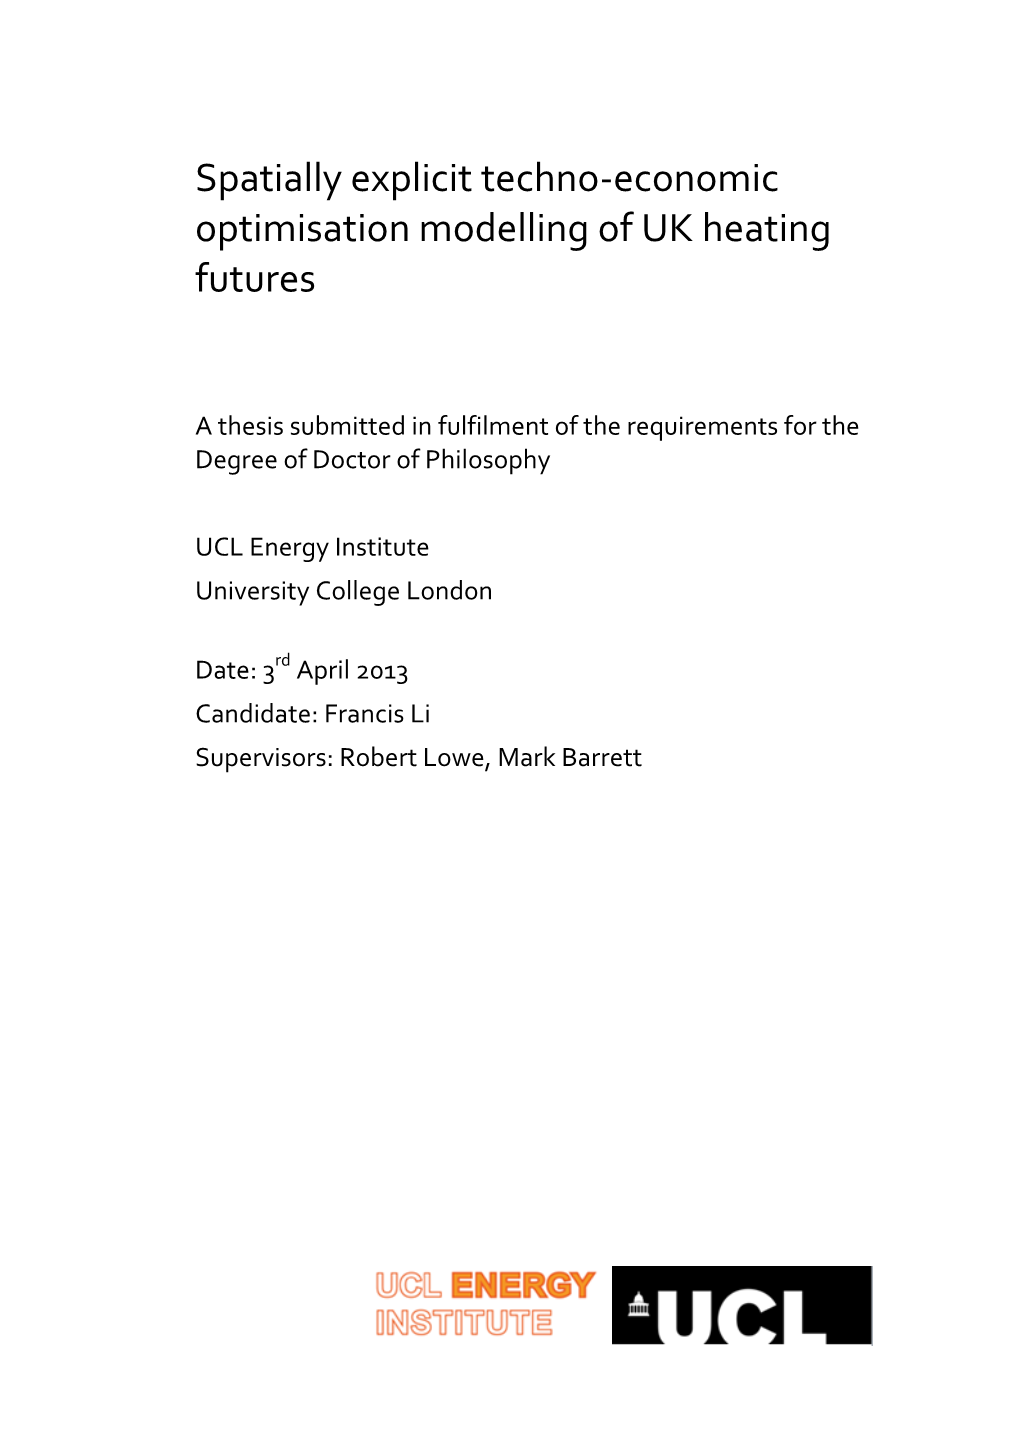 Spatially Explicit Techno-Economic Optimisation Modelling of UK Heating Futures